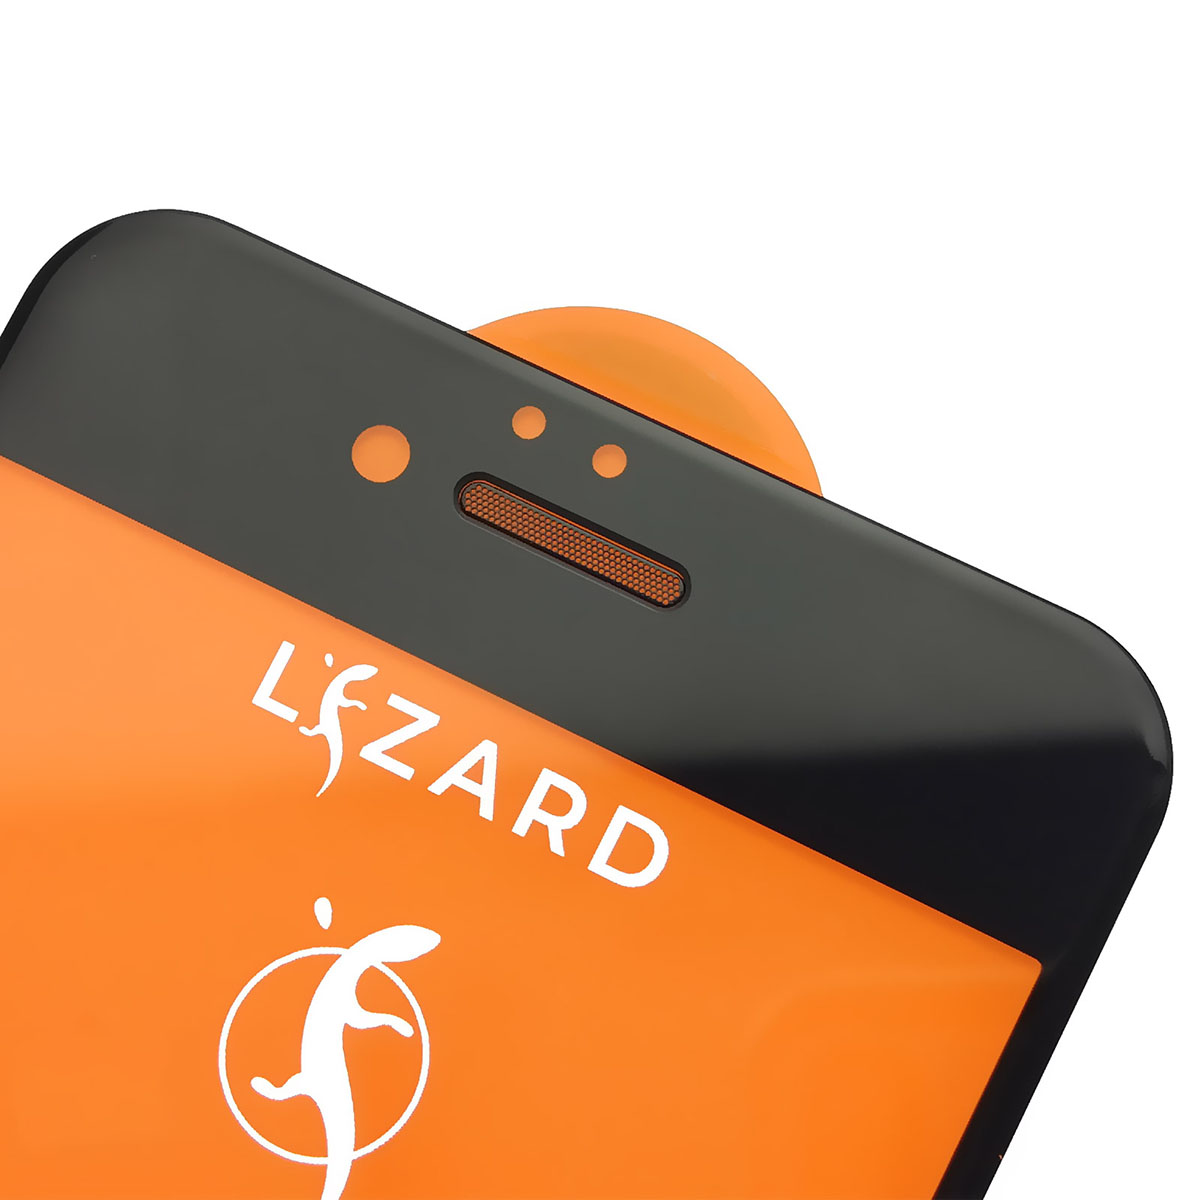 Защитное стекло 9D Lizard для APPLE iPhone 6, iPhone 6S, с сеточкой на динамике, цвет черный